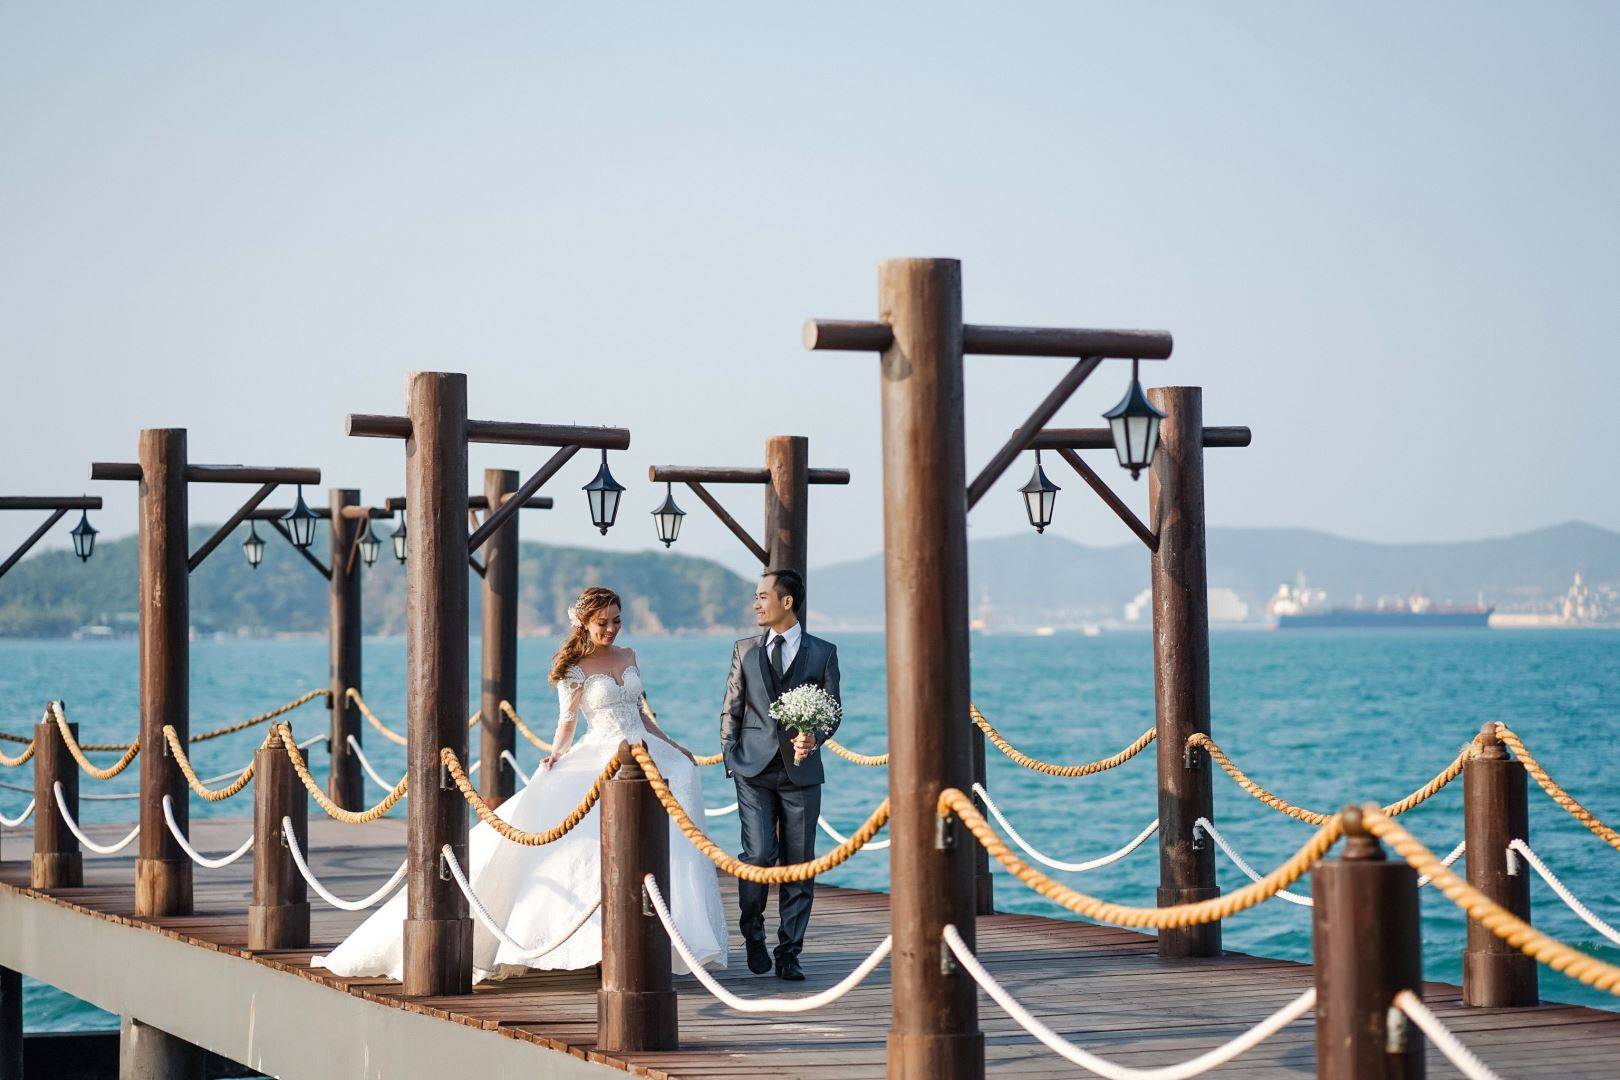 Cầu gỗ Hòn Tằm với khung cảnh lãng mạn giữa mây trời và biển khơi là địa điểm chụp hình cưới lý tưởng cho các cặp đôi